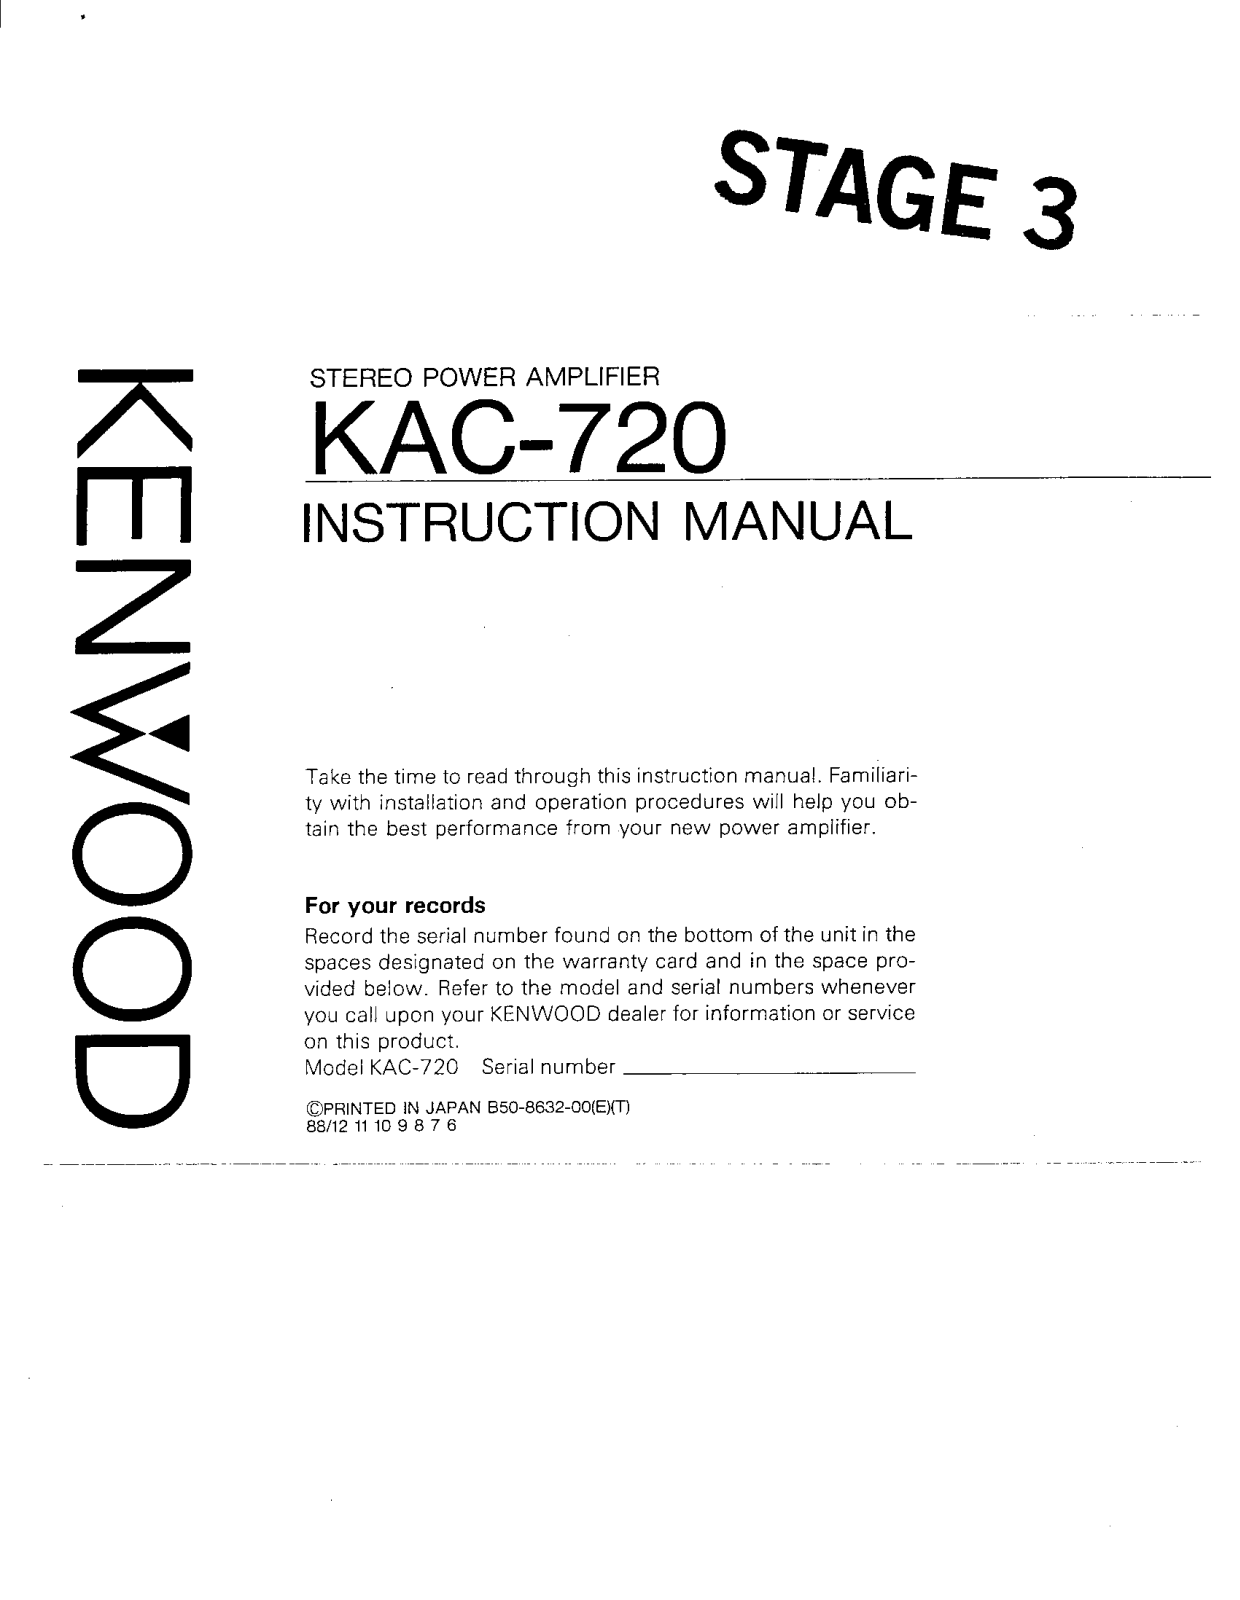 Kenwood KAC-720 Owner's Manual